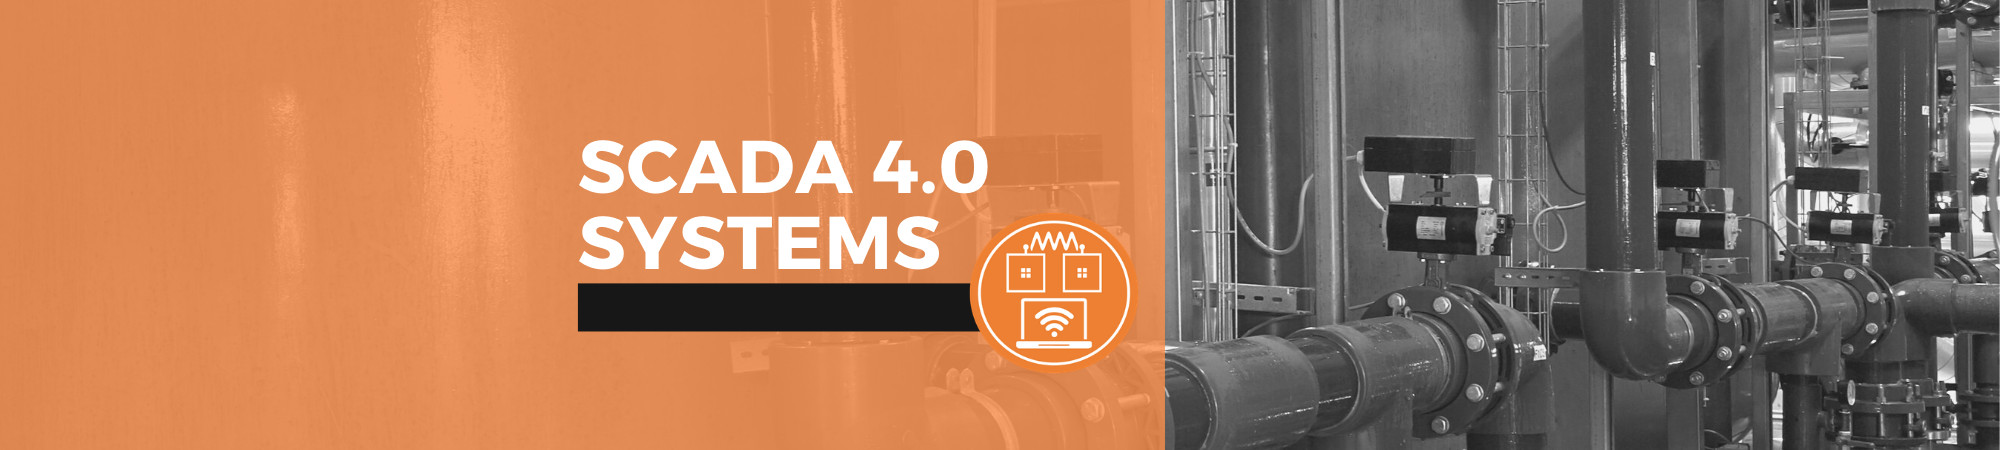 SCADA 4.0 Systems